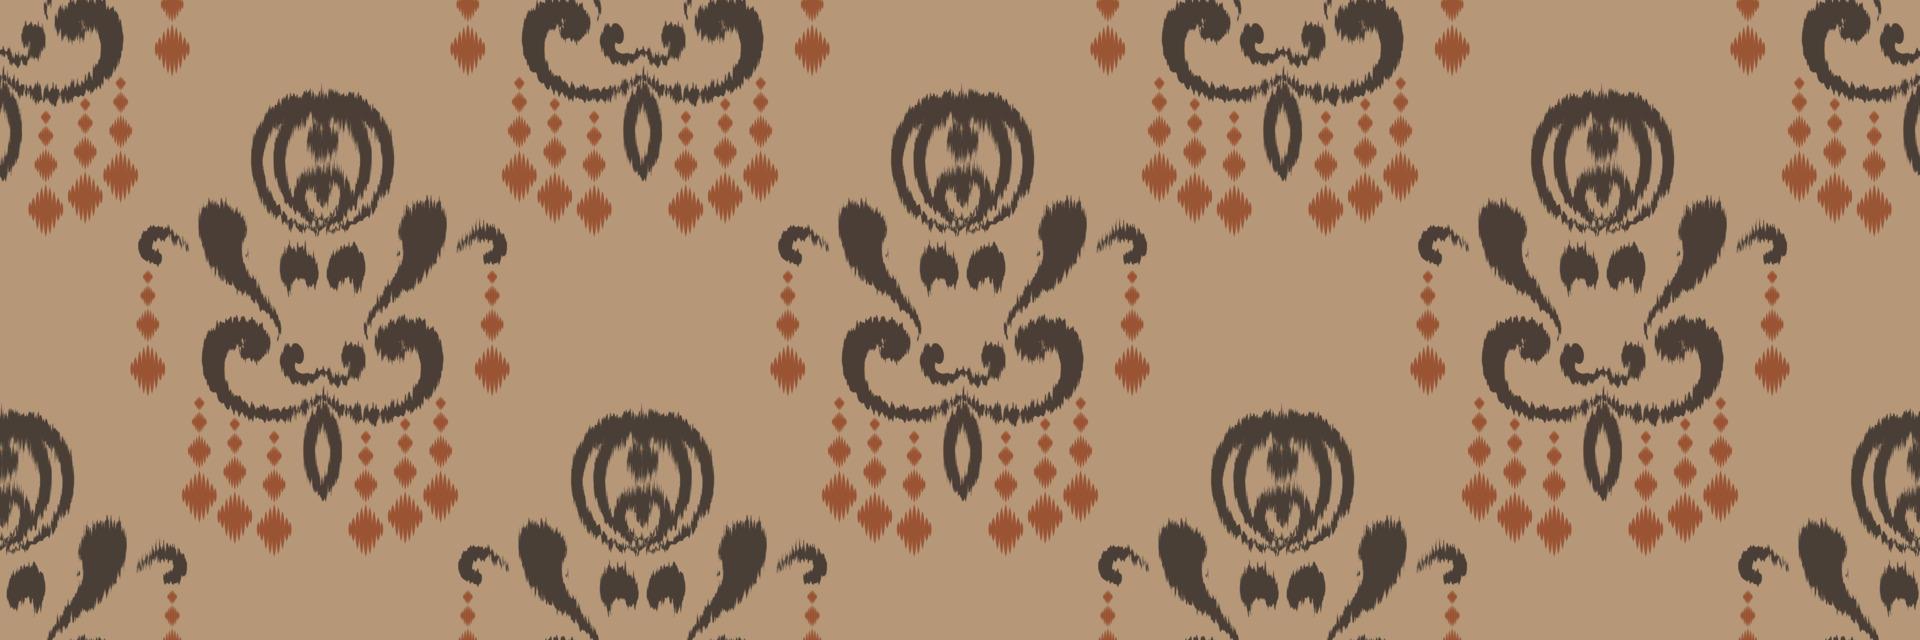 Ikat Damask Scandinavian embroidery, ikat seamless pattern, Asian design Digital textile Asian Design ancient art for Prints Fabric saree Mughal Swaths texture Kurti Kurtis Kurtas vector